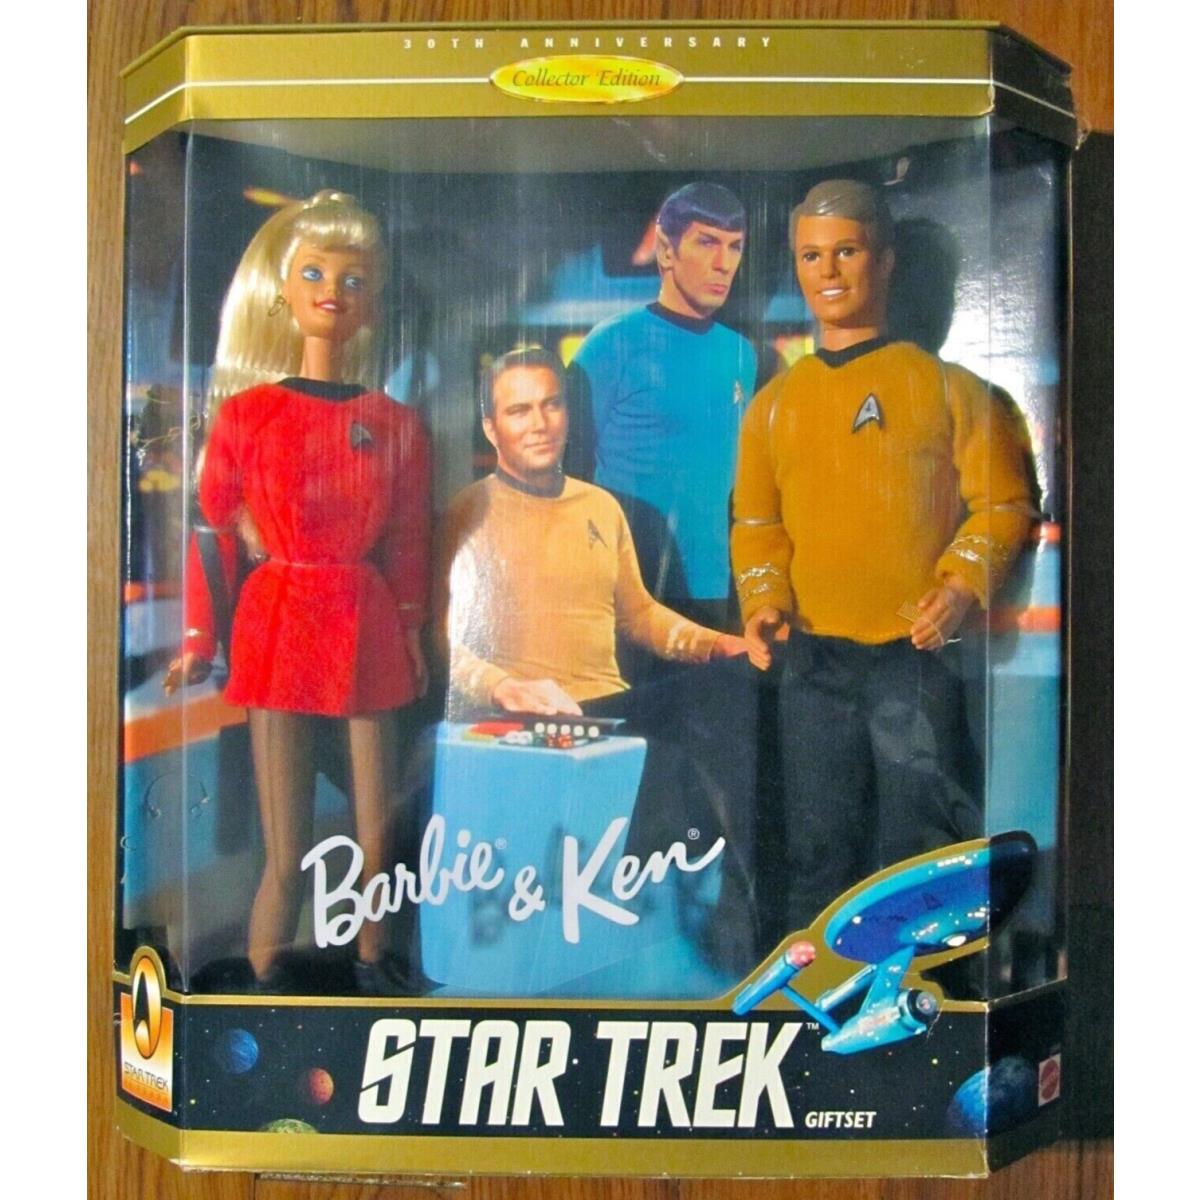 Barbie Ken Star Trek Giftset 30th Anniversary Collector Edition Mattel 1996